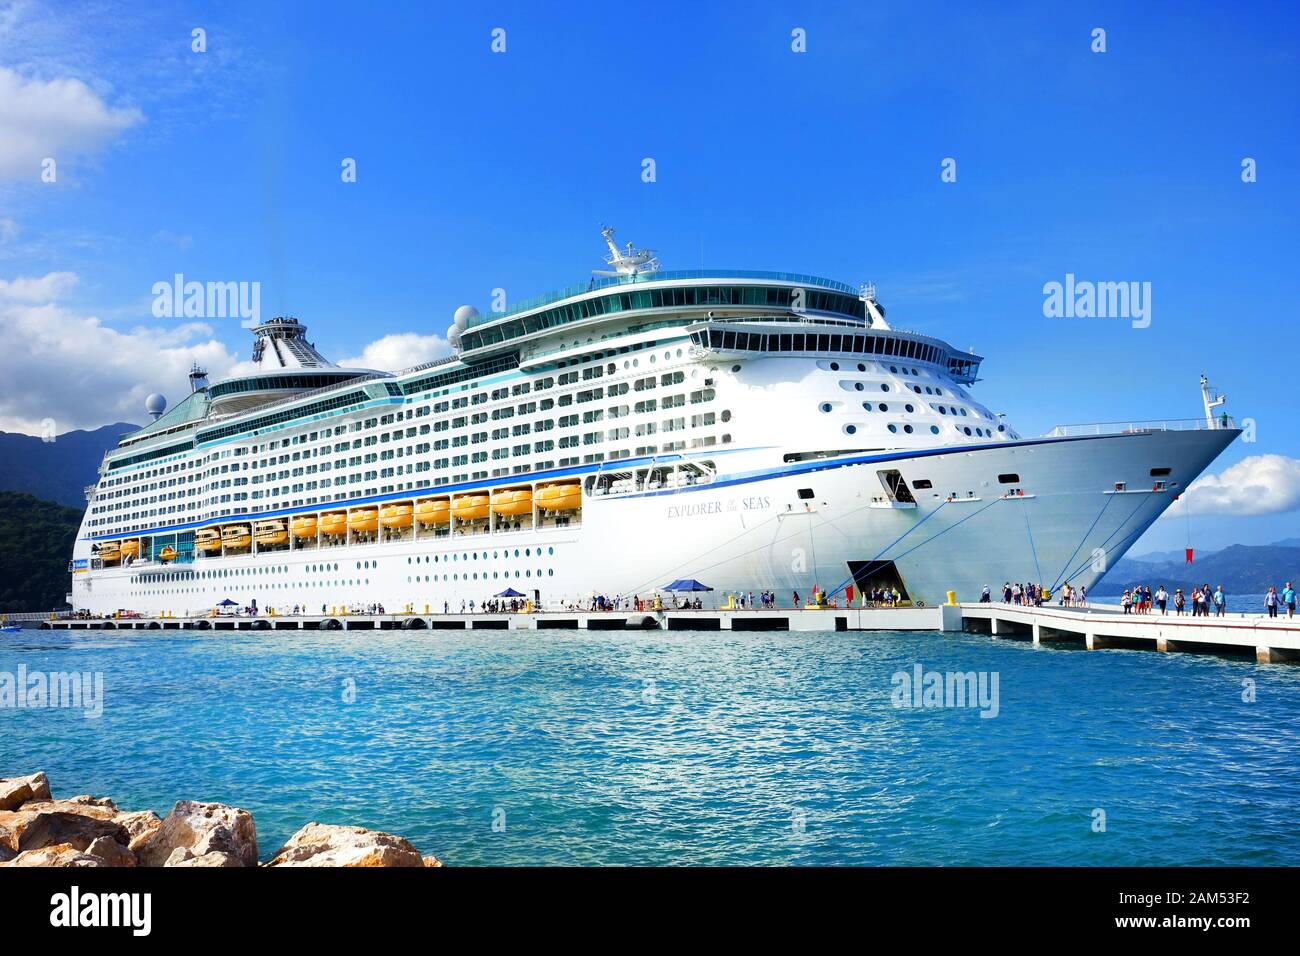 Der Royal Caribbean Cruise Liner, Explorer of the Seas, war am Hafen in Labadee, Haiti. Passagiere steigen aus und fahren entlang des Anlegers Stockfoto